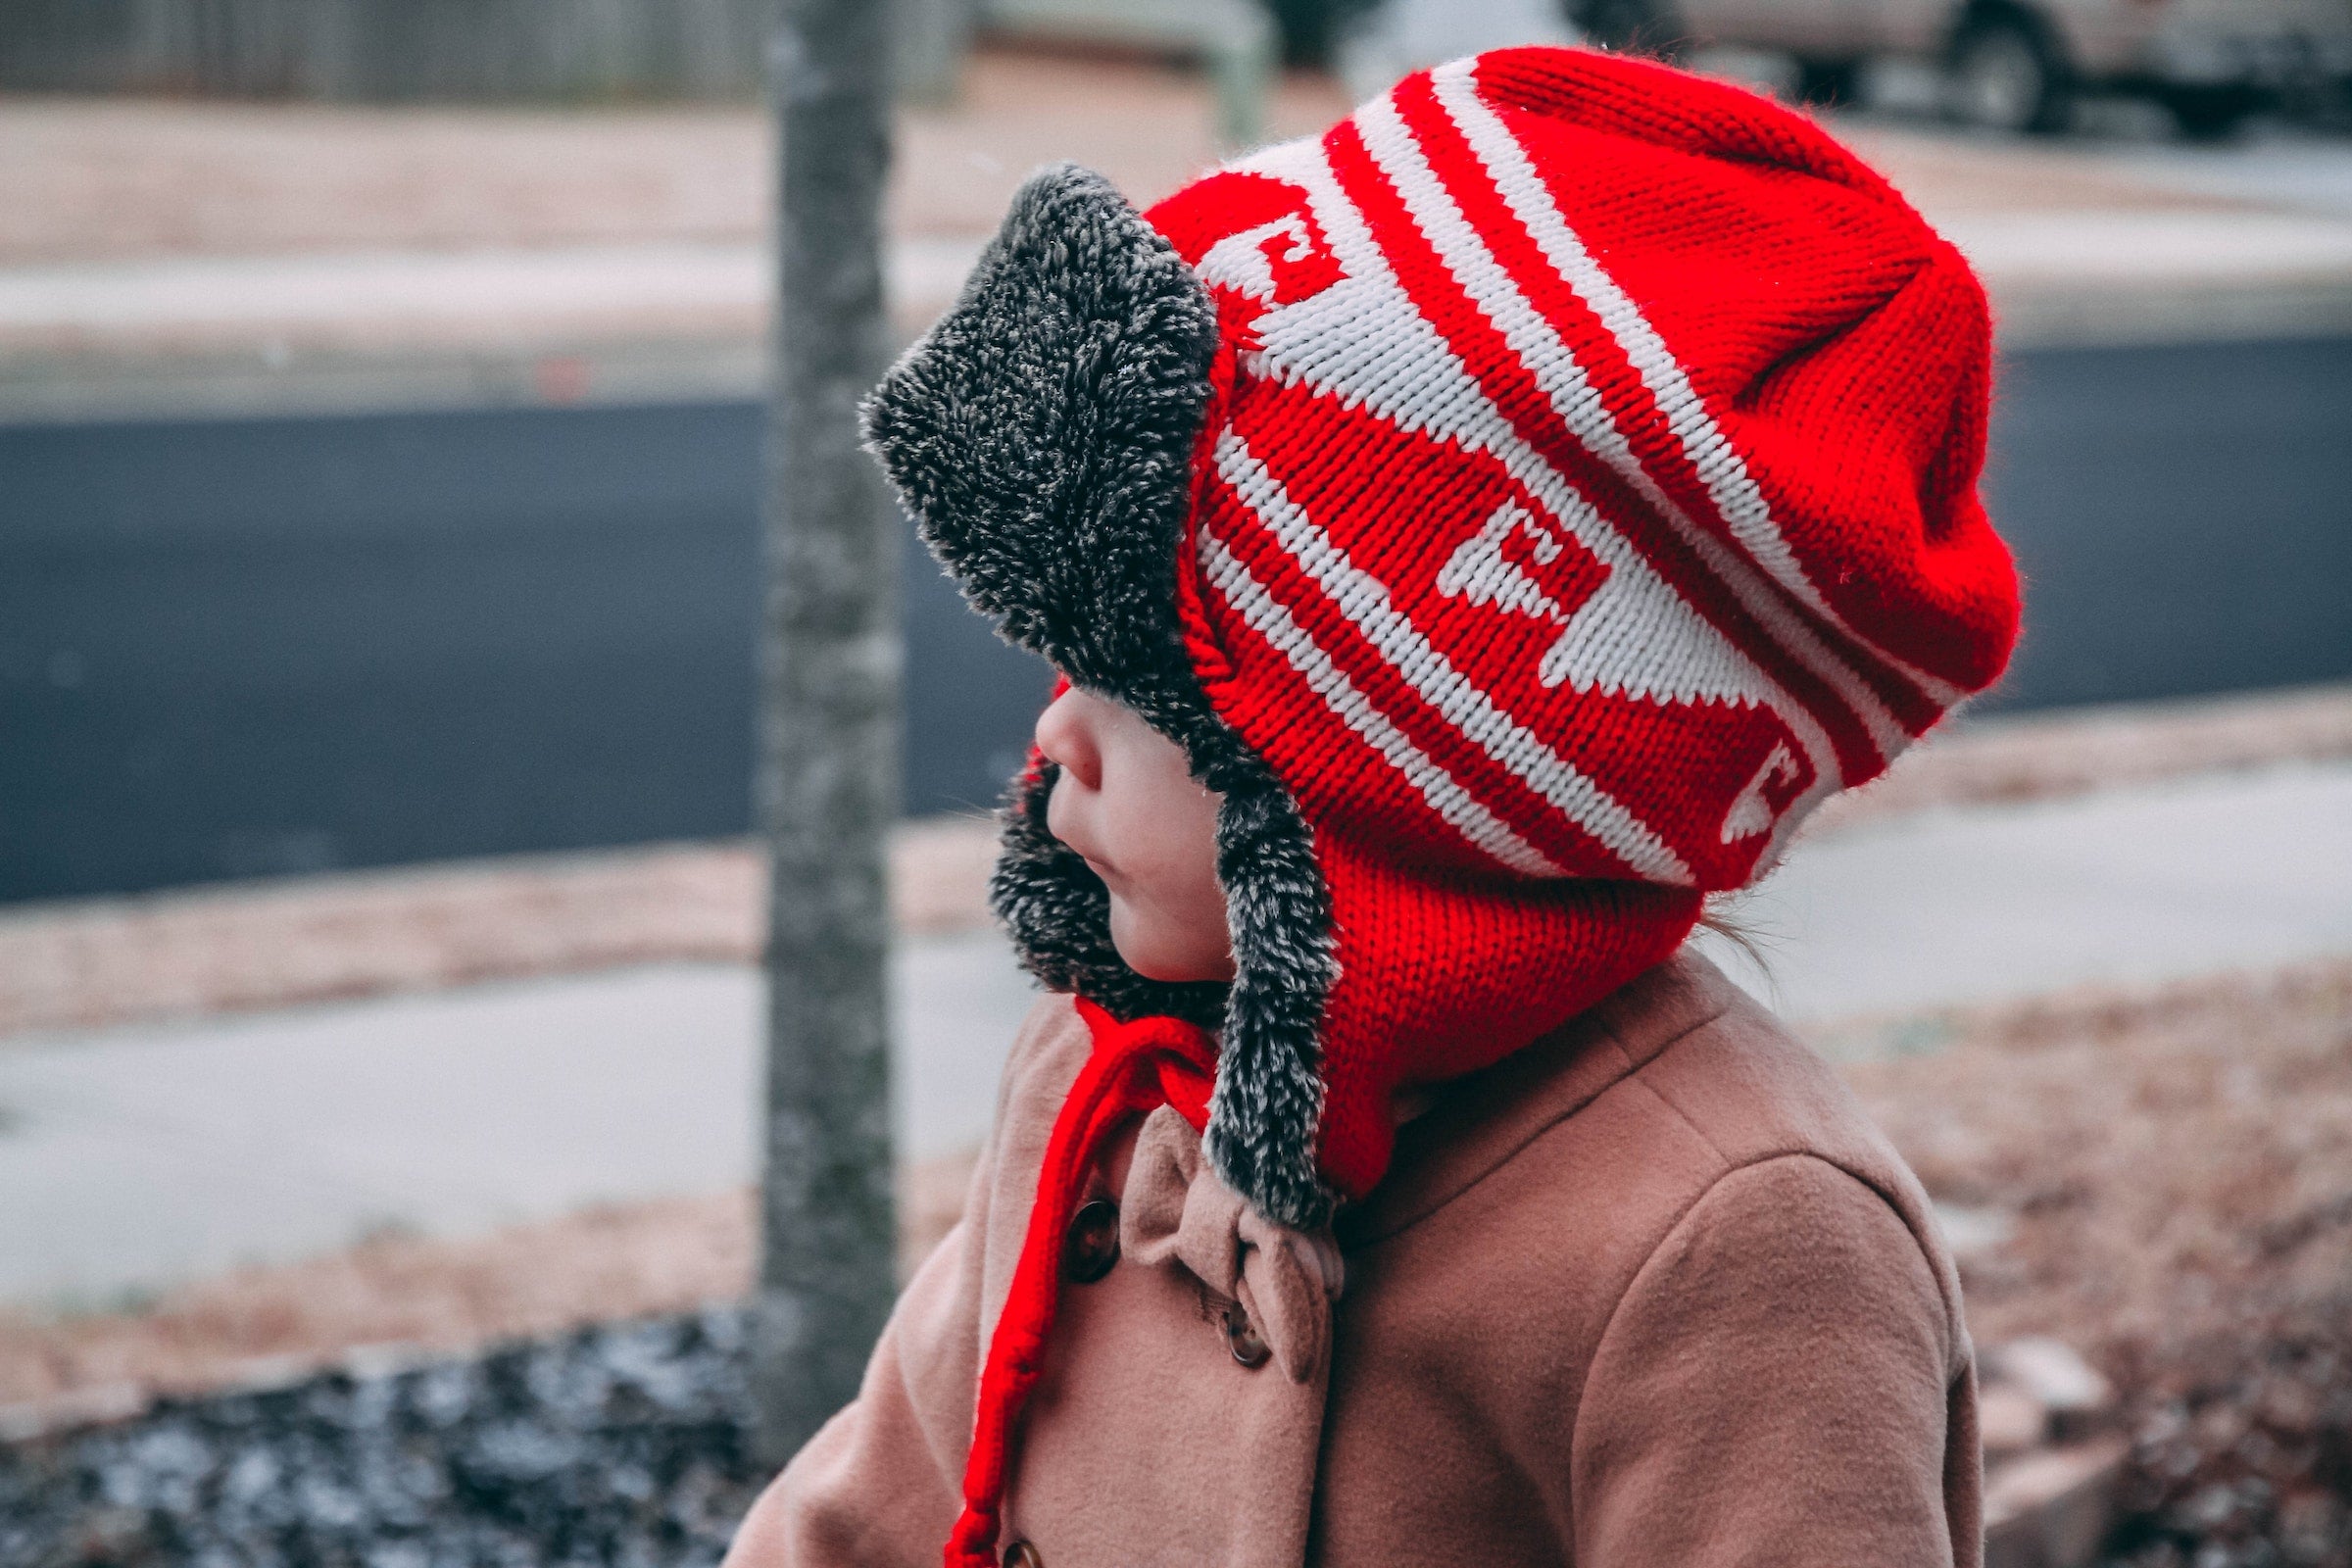 a baby in winter attire